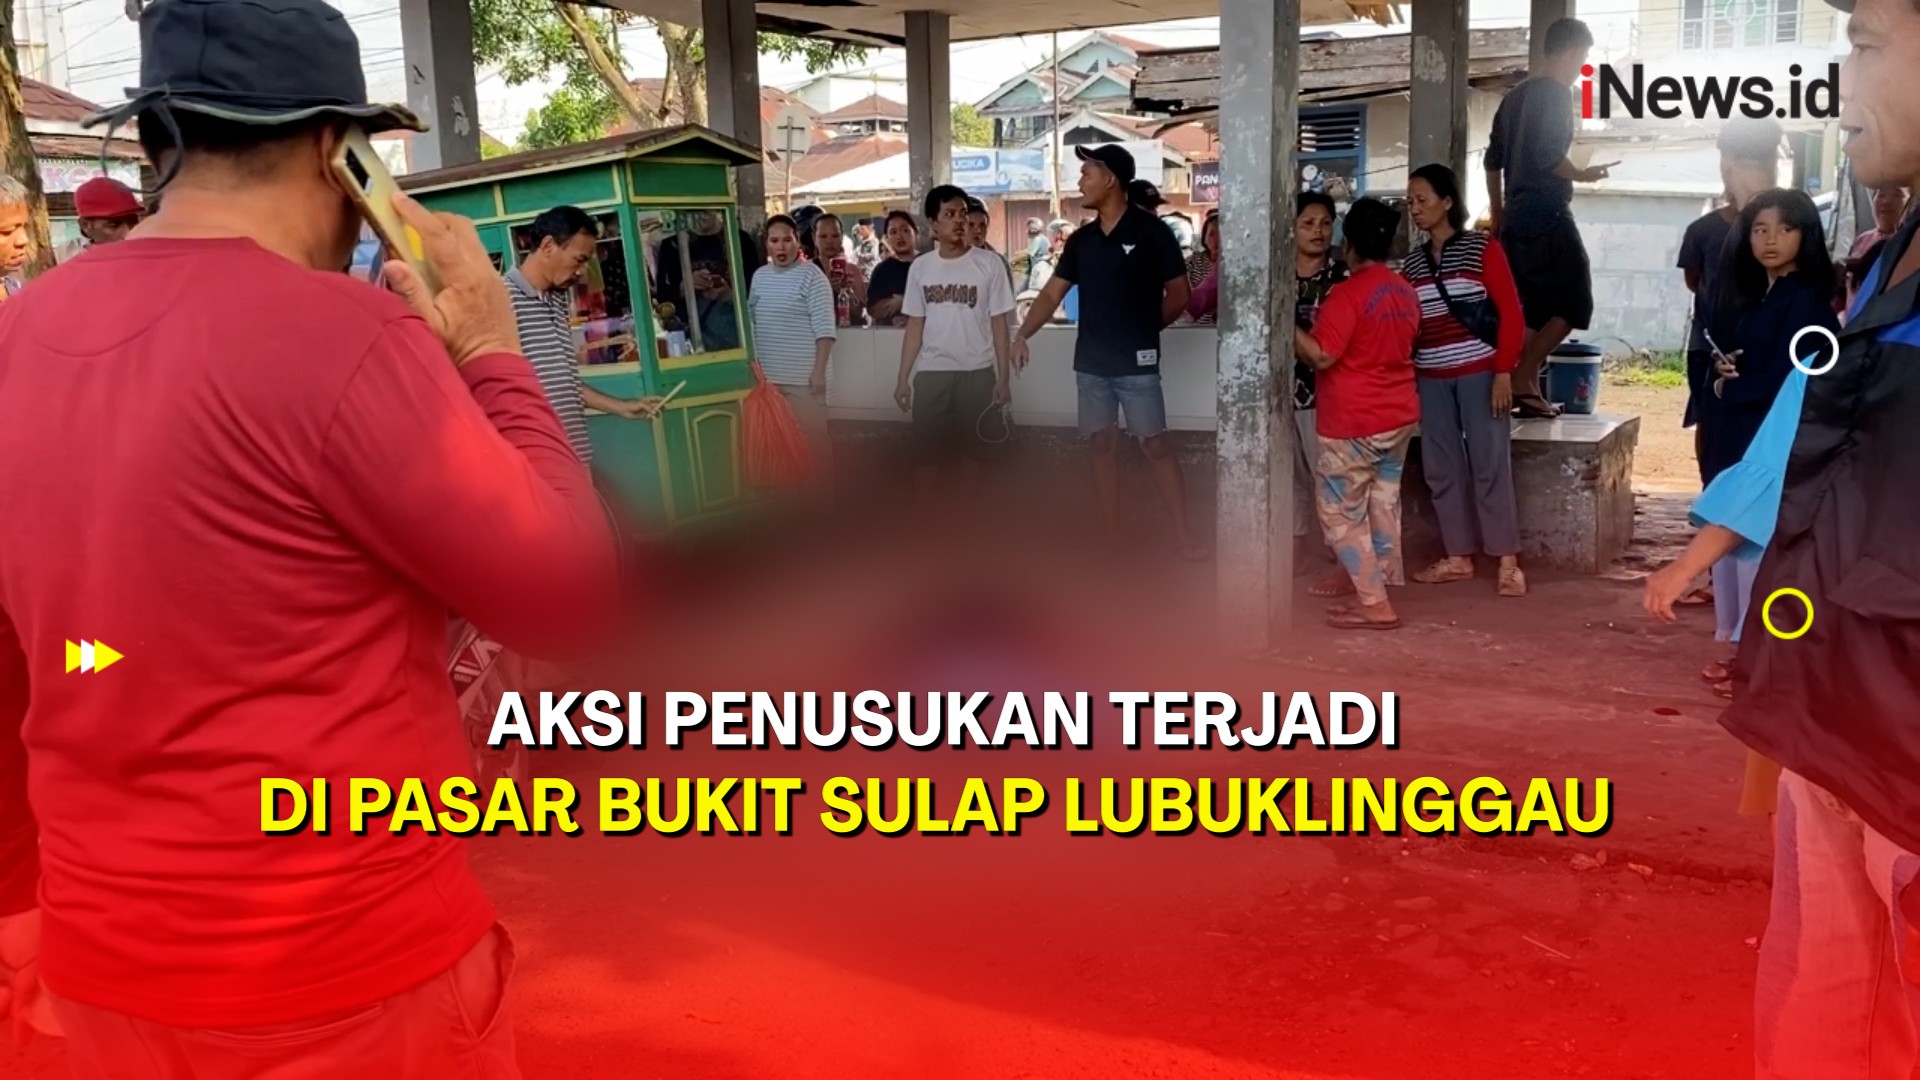  Tragis! Aksi Penusukan Terjadi di Pasar Bukit Sulap Lubuklinggau, 1 Orang Tewas